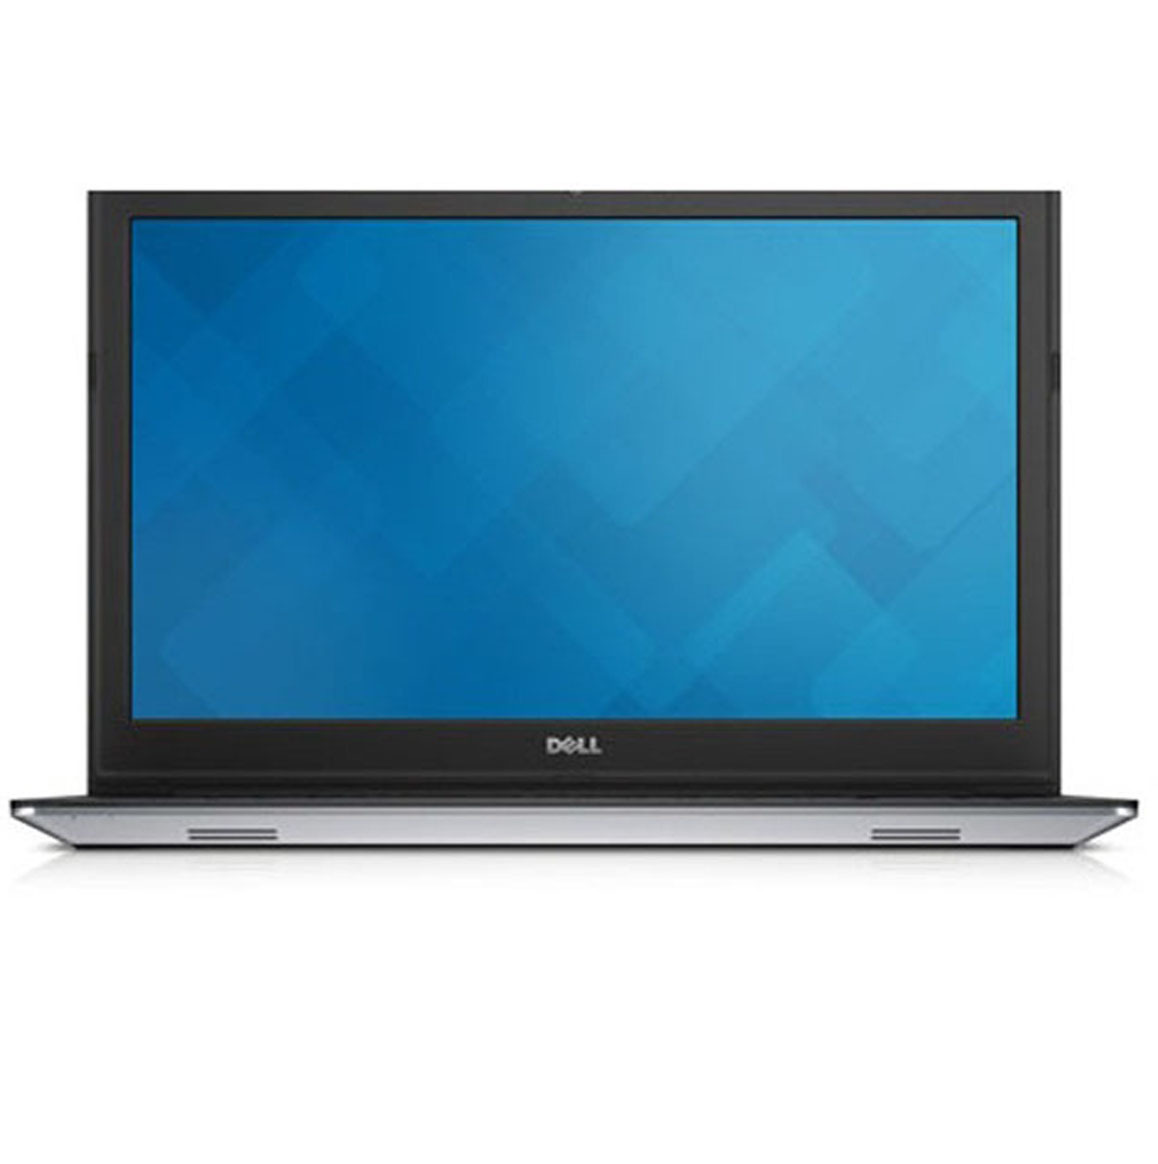 Laptop Dell Inspiron 15 5558 M5I5359W i5-5200U/4GB/500GB 15.6 inches Bạc (Hàng chính hãng)